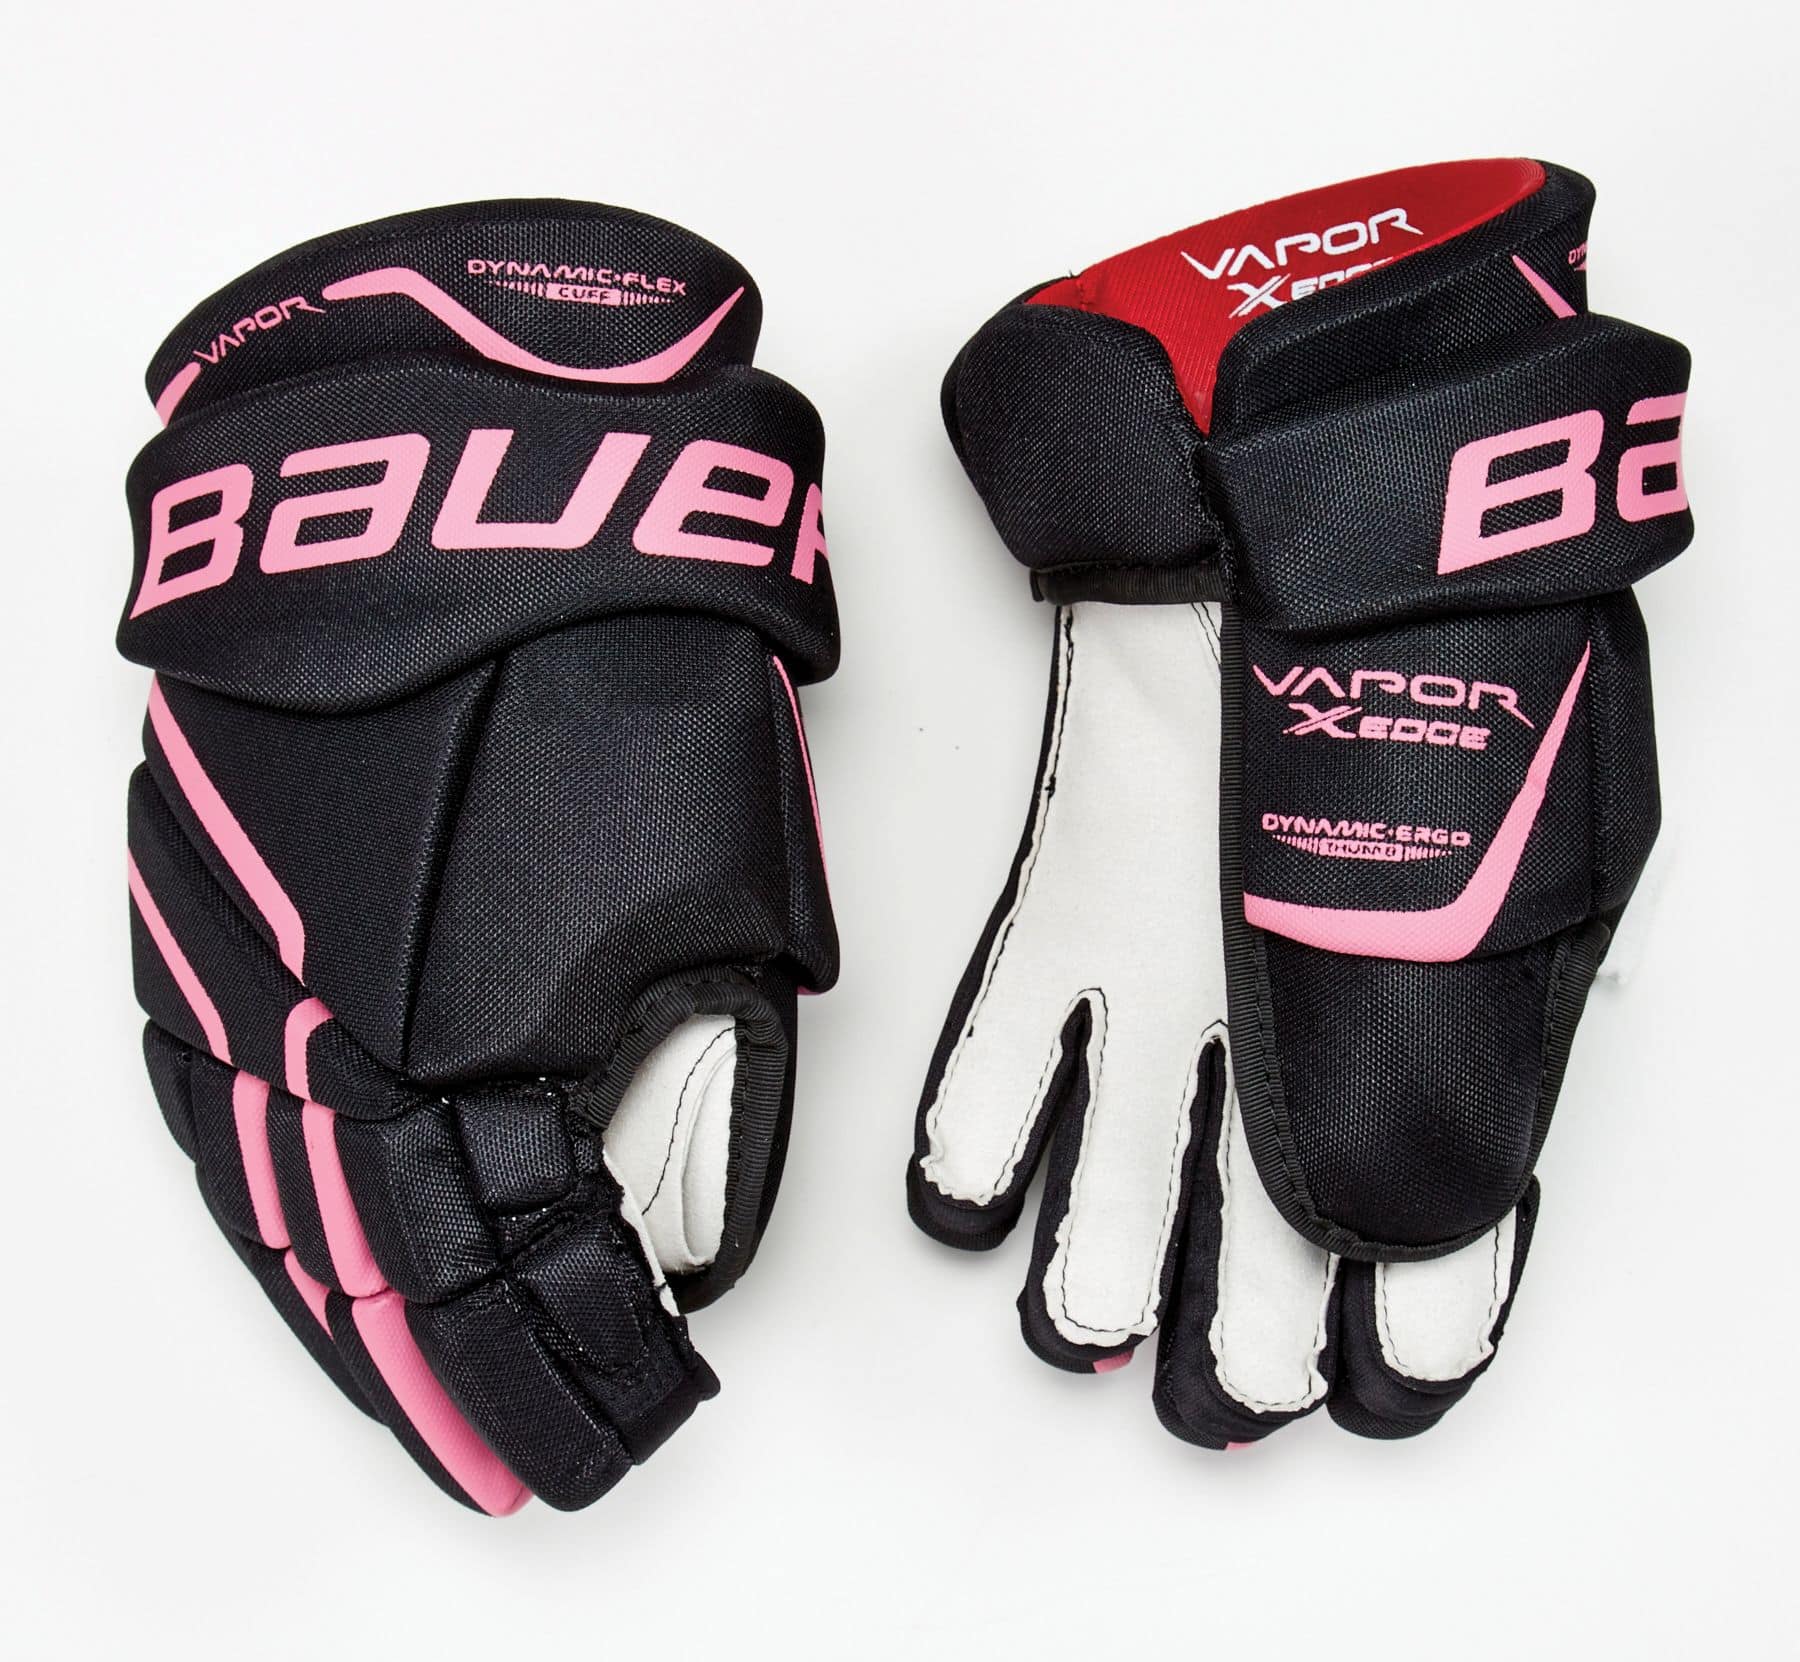 Paire de gants d'hiver STAG - HockeyShop